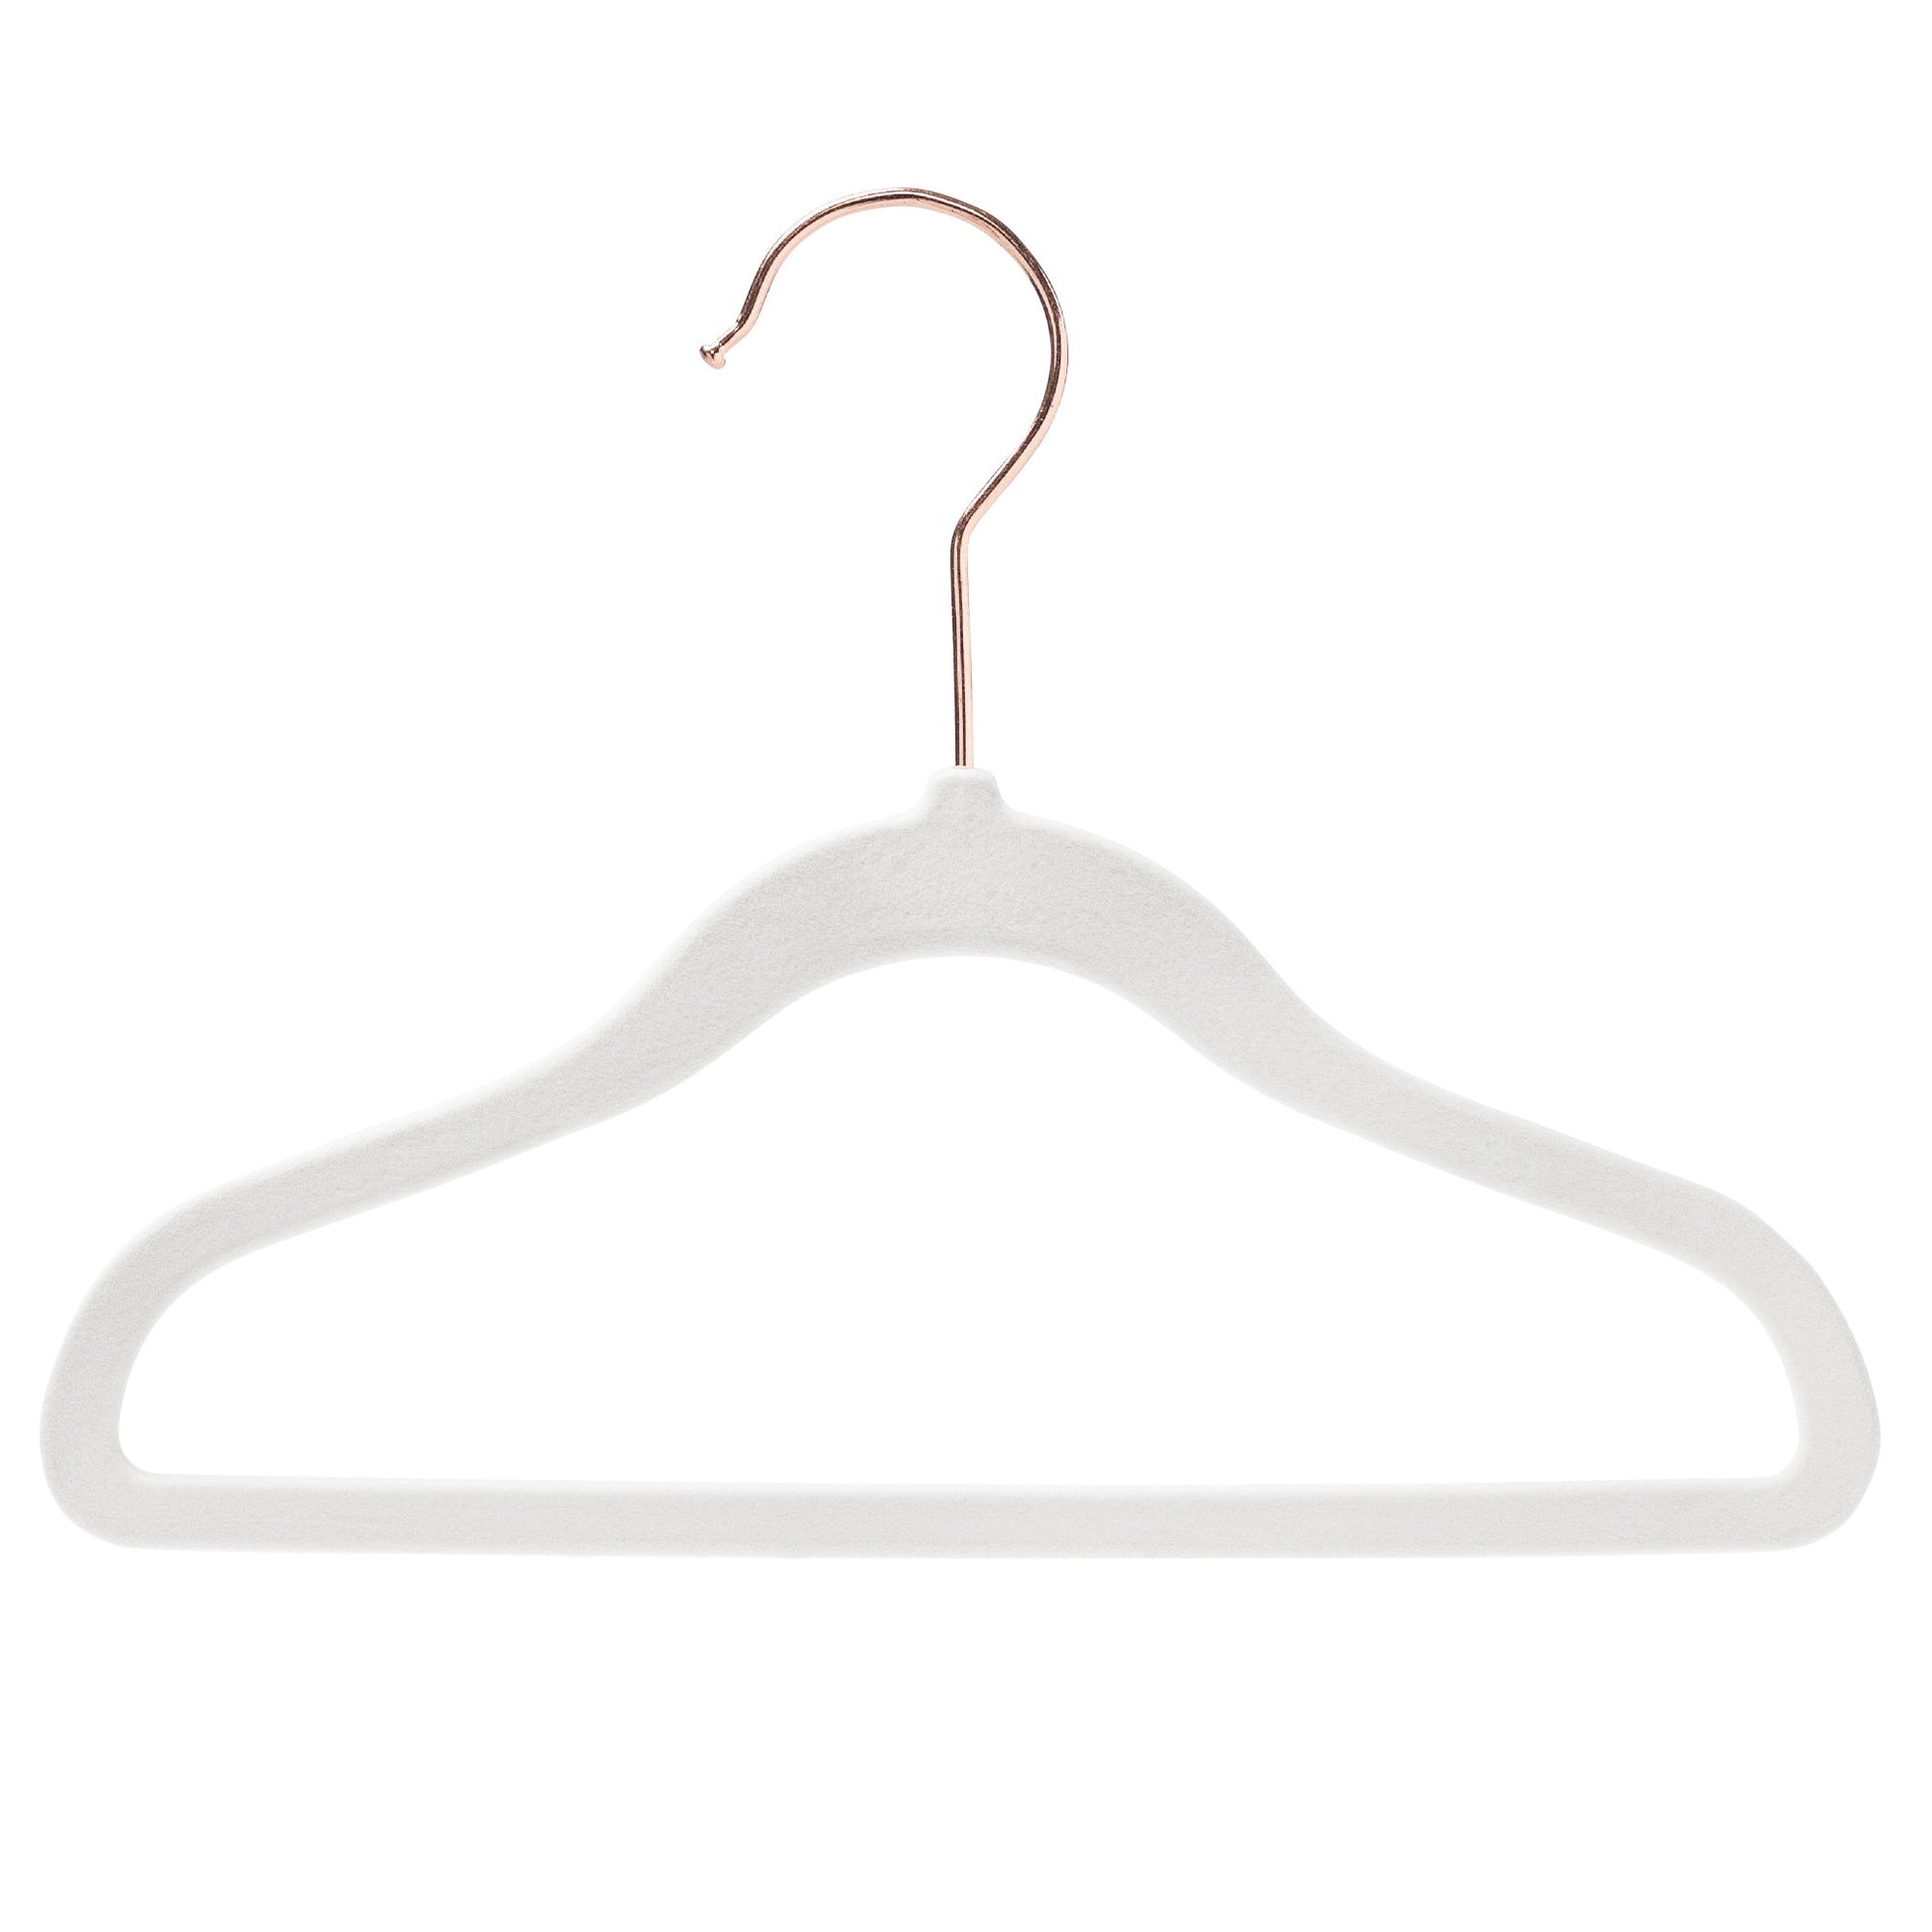 25cm Kids Size Slim-Line White Velvet Suit Hanger with Rose Gold Hook Sold in Bundles of 20/50/100 - Rackshop Australia